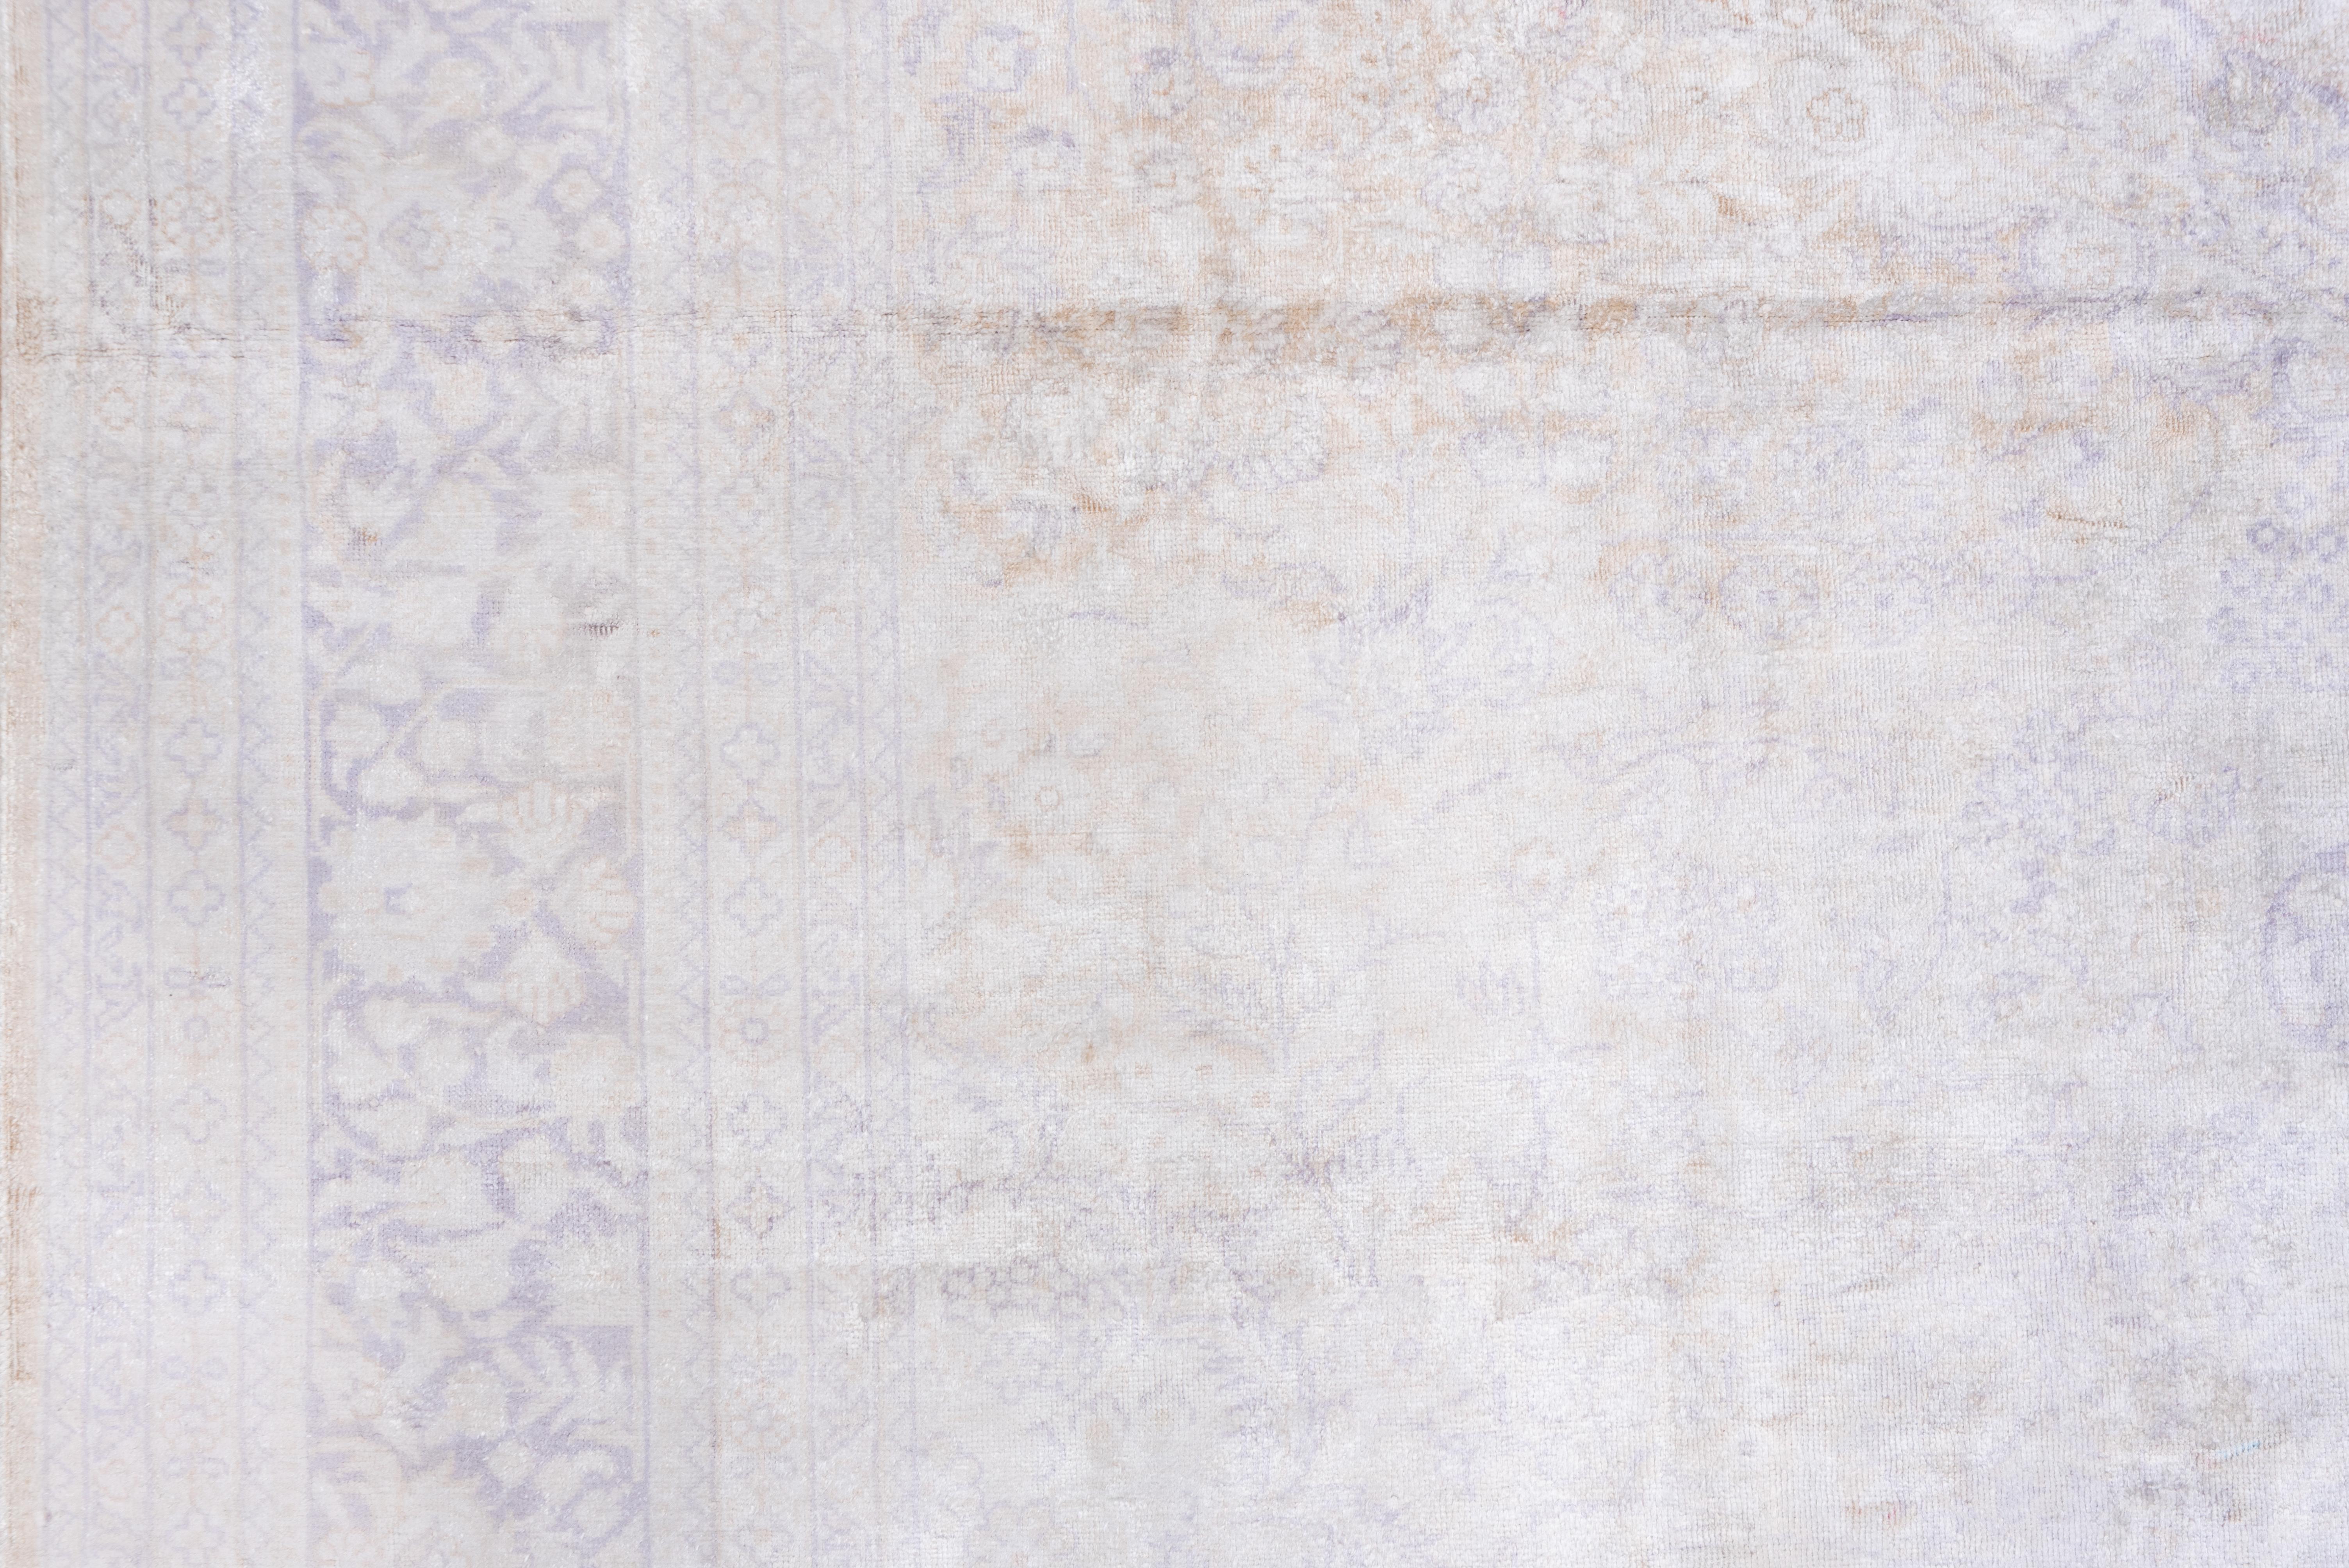 Dieser gedämpfte osttürkische Stadtteppich zeigt ein Schattenmuster in Hellbraun und Blassgrau mit einem hängenden, fast runden Medaillon und einer floralen Sprühfüllung.